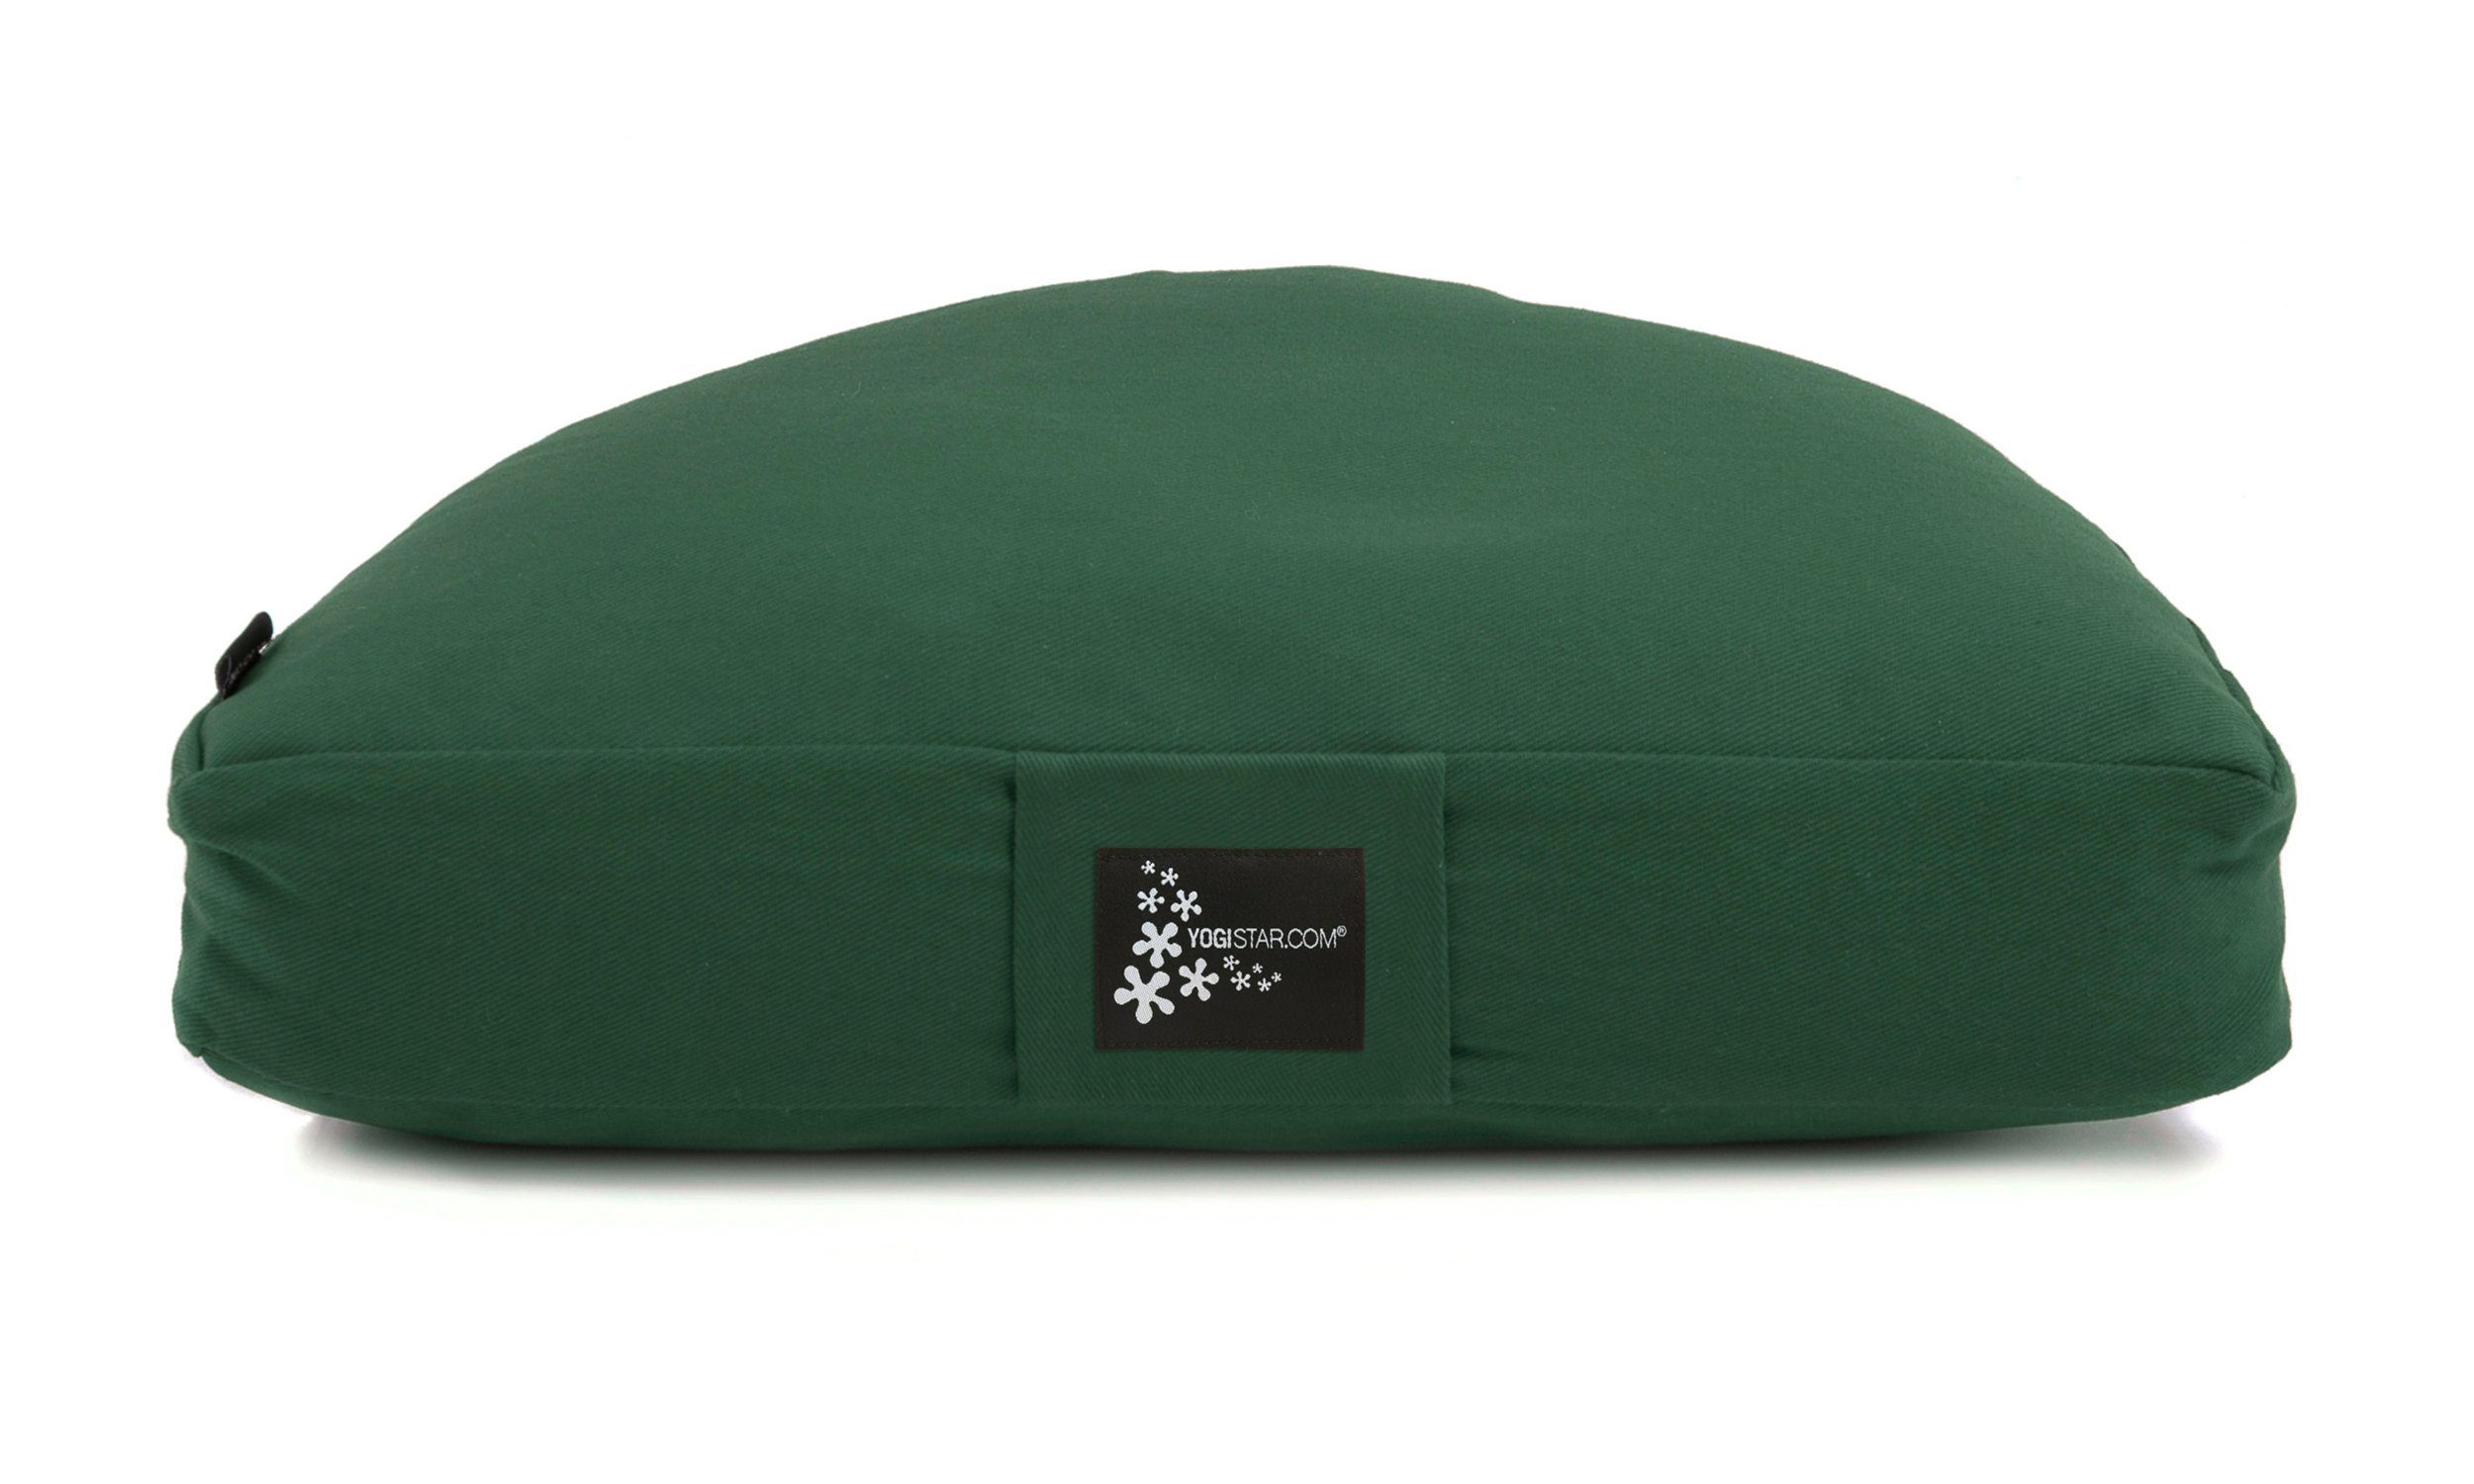 Yogistar Meditationskissen einen dunkel und für Meditationskissen Hochwertiges Meditationskissen Halfmoon, grün stabilen bequemen Sitz